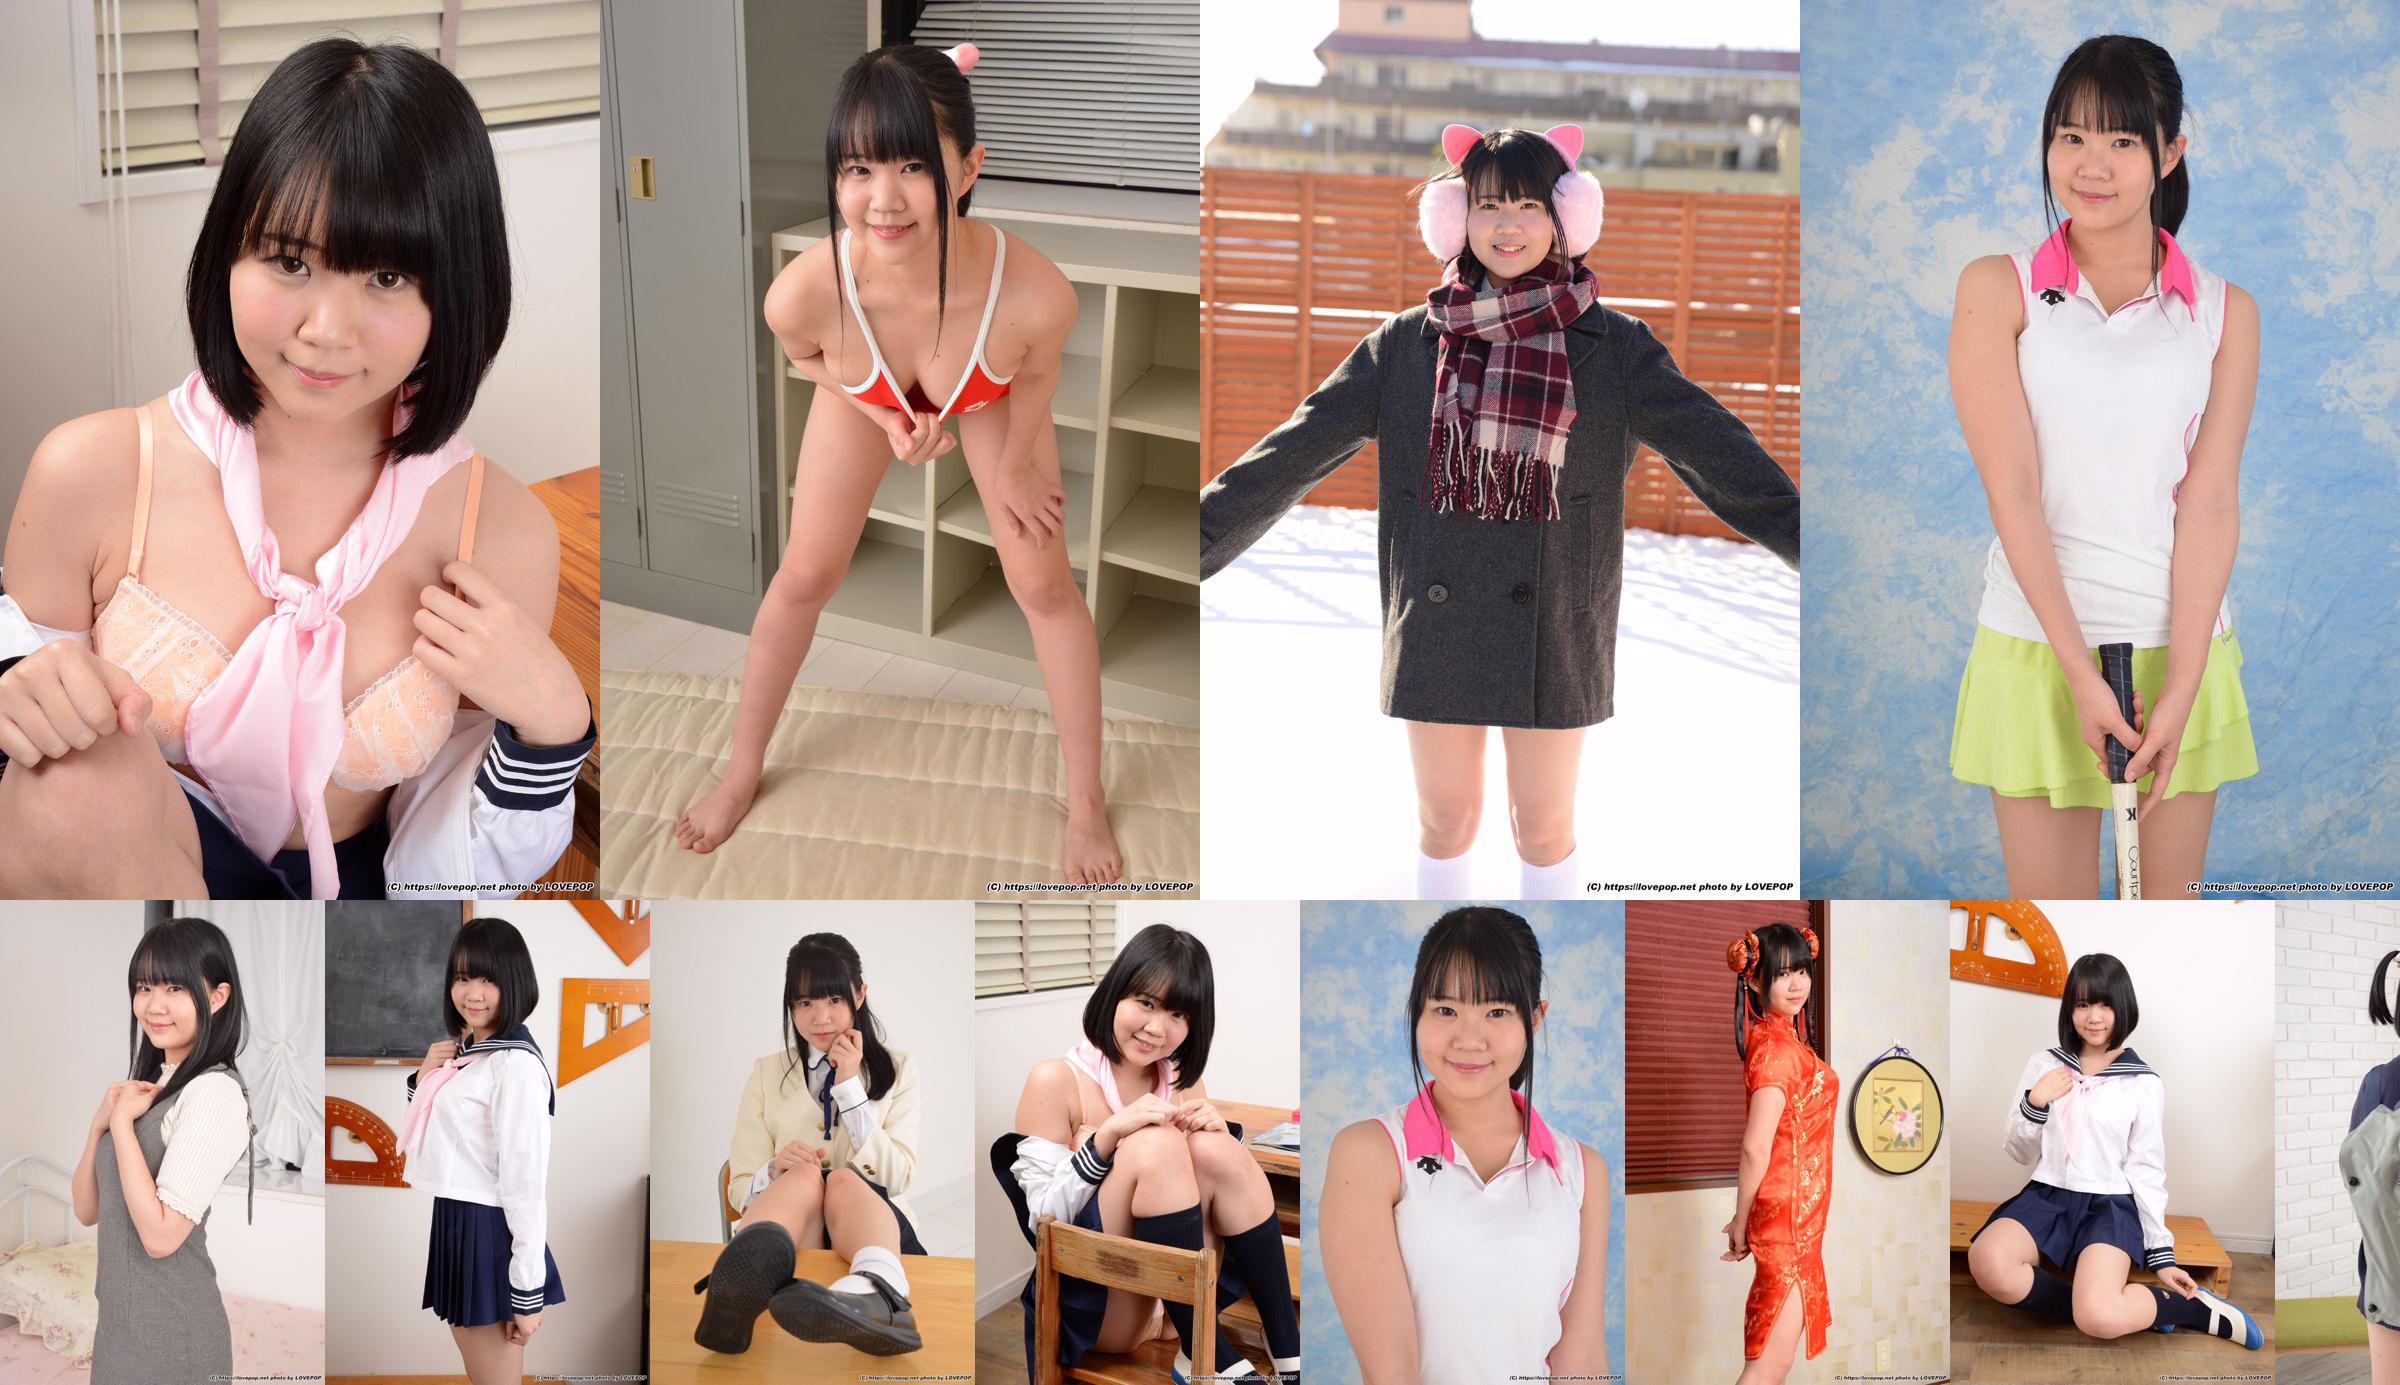 [LOVEPOP] Hinata Suzumori Suzumori Hinata / Suzumori ひなた Photoset 09 No.cf2e12 Page 36